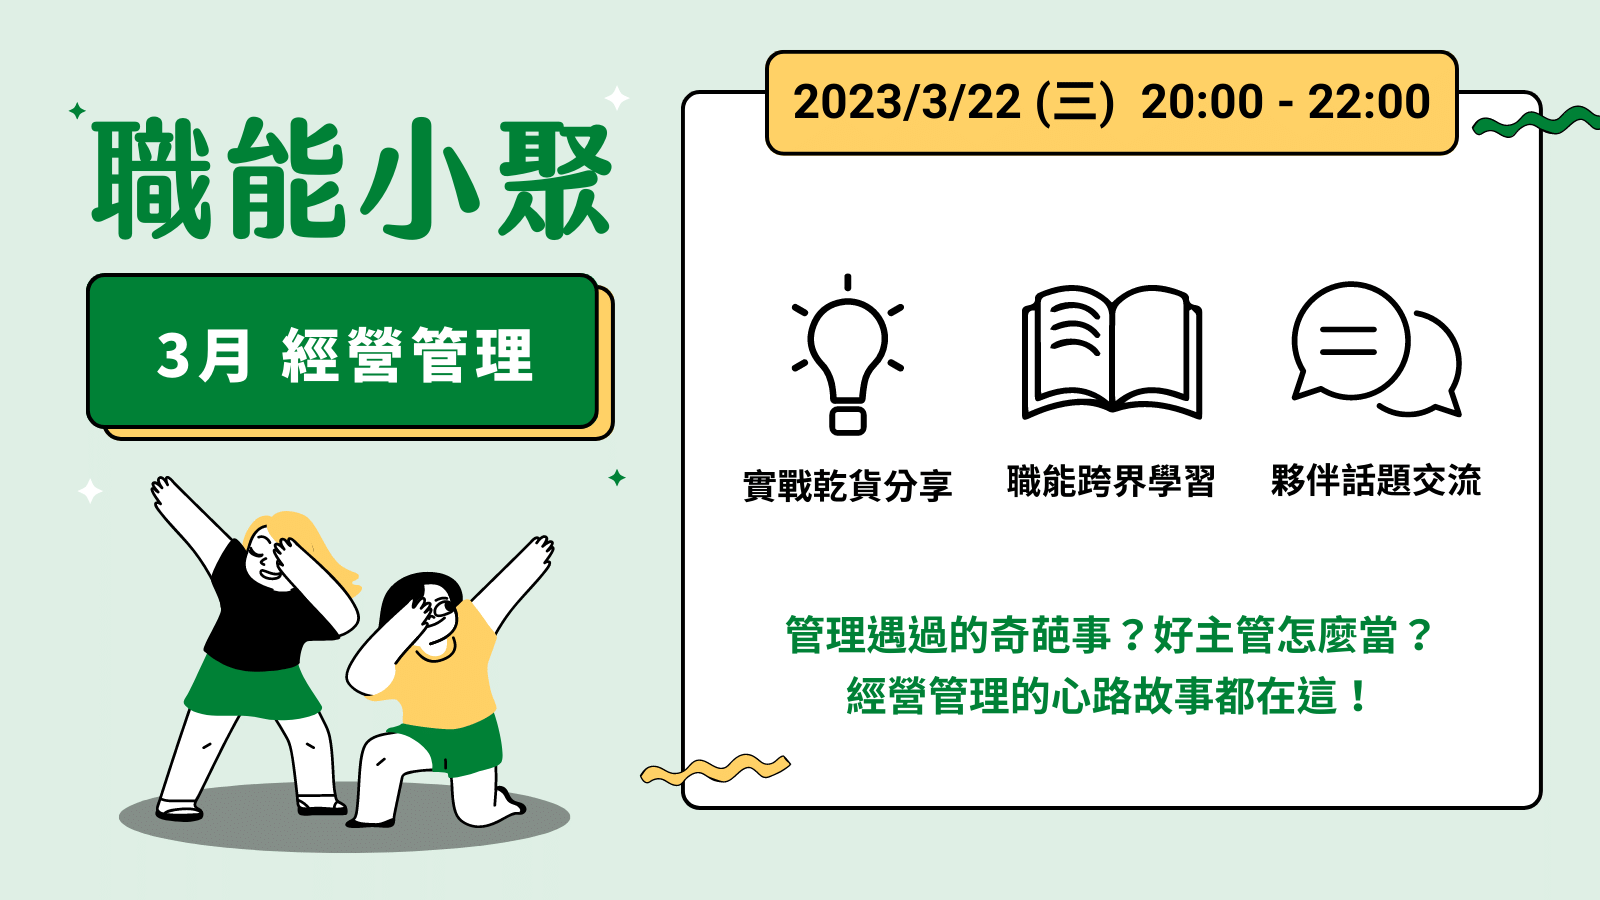 2023年 3 月職能小聚 - 3/22 經營管理課程封面